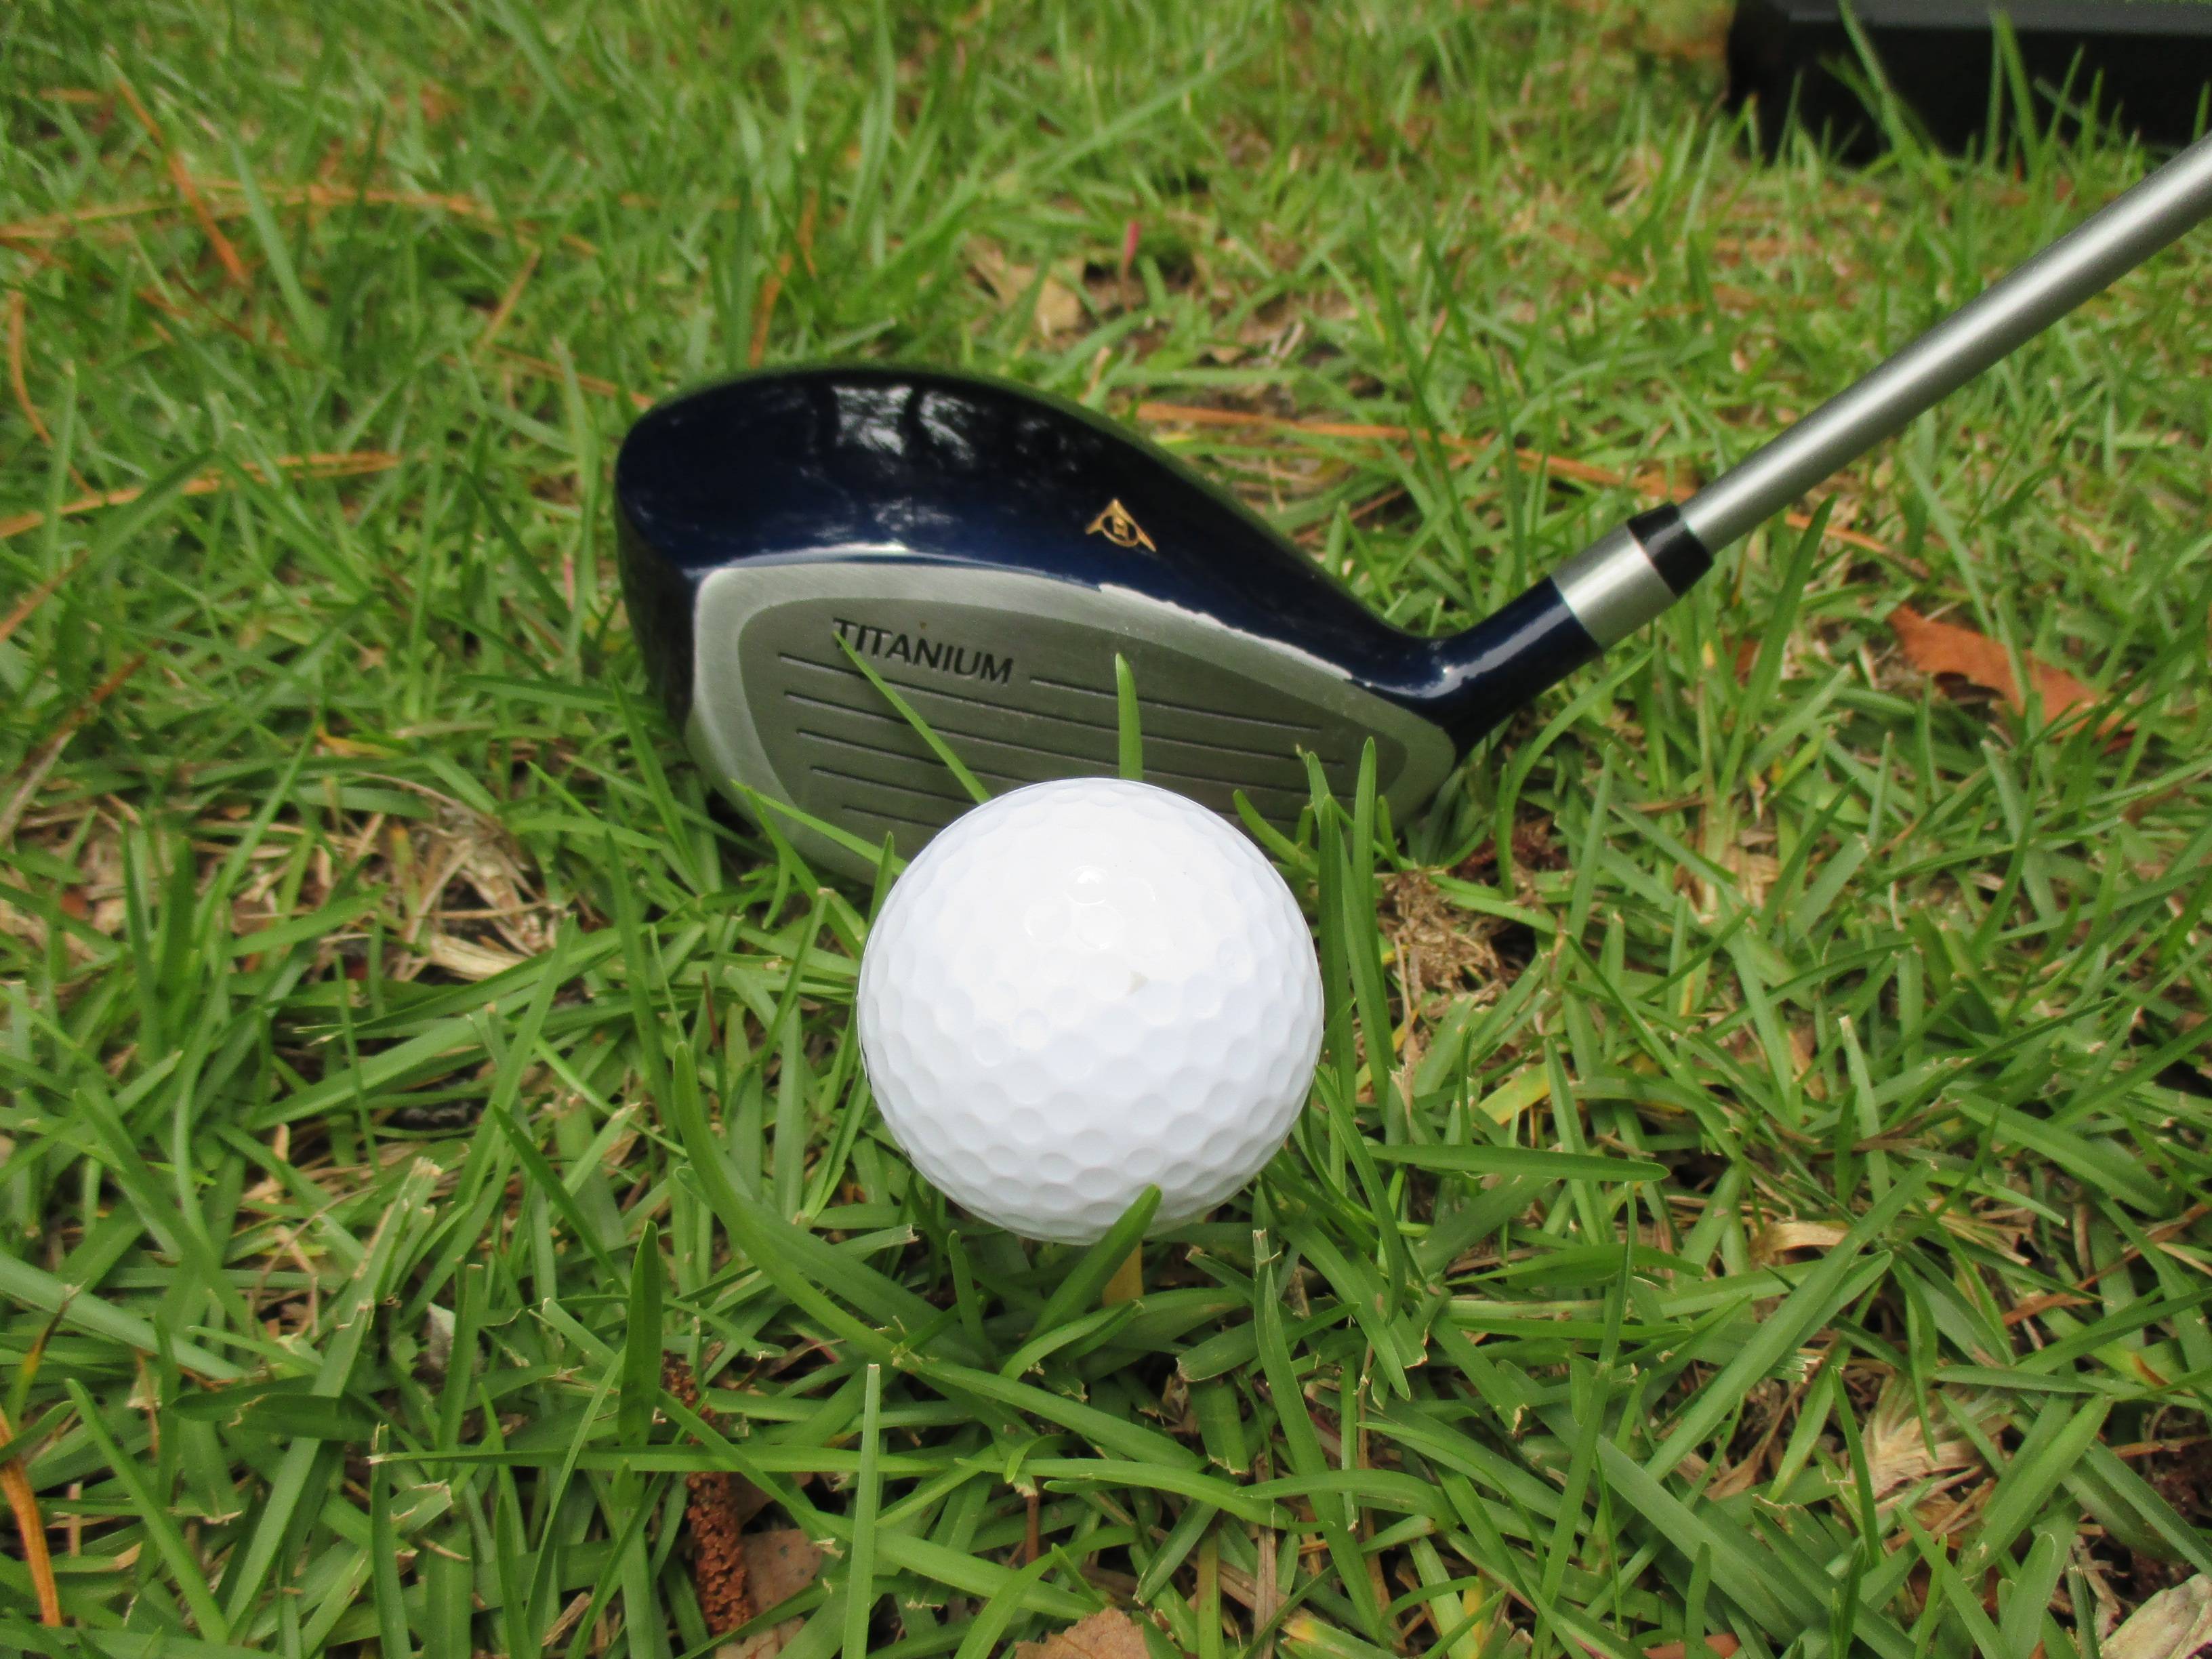 ᐉ о гольфе — игра в гольф — история гольфа - правила игры - этикет - инвентарь - словарь - поле для игры в гольф